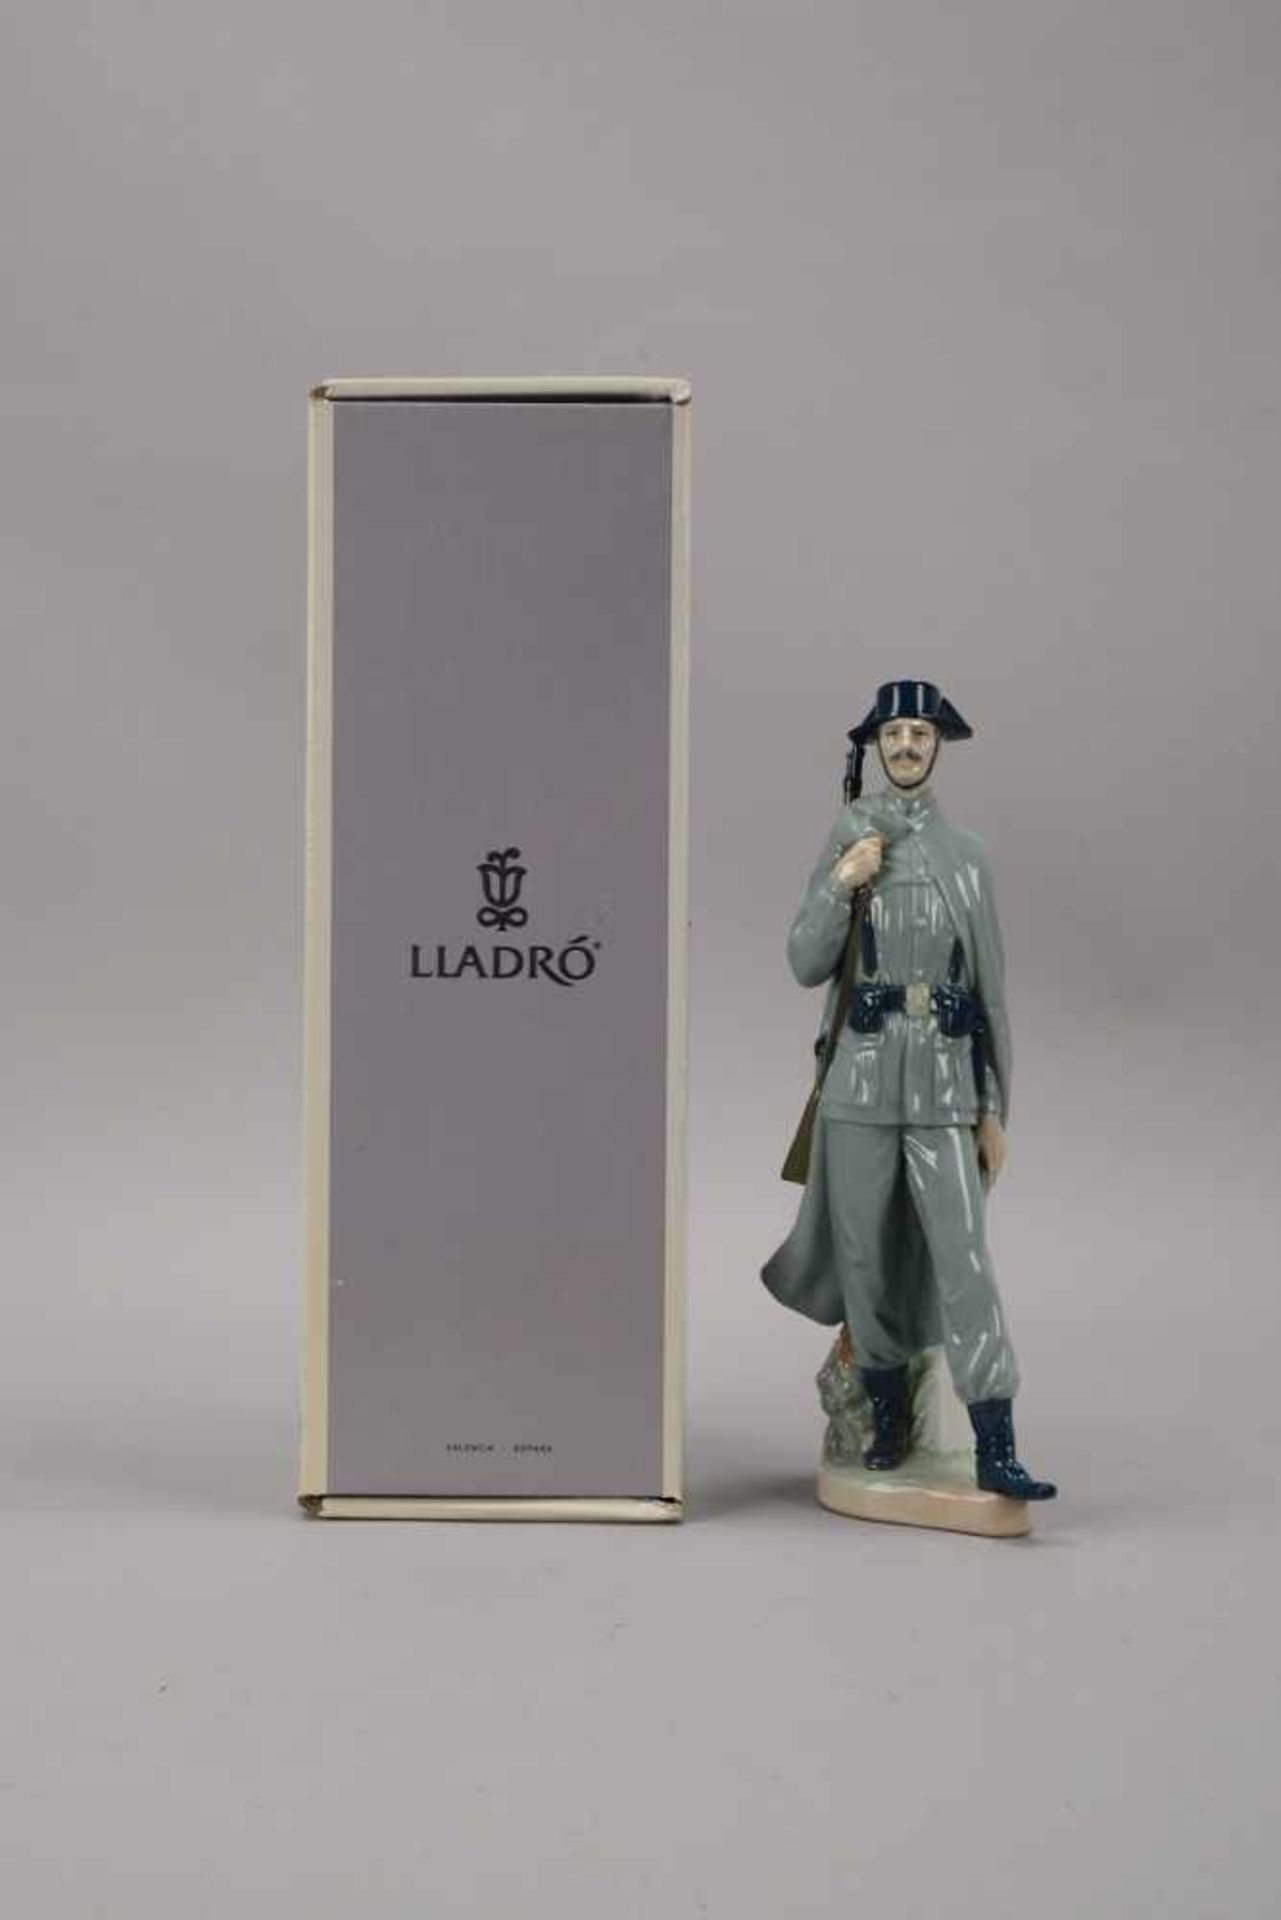 Lladro/Spanien, Porzellanfigur, 'Spanischer Gendarm', pastellige Unterglasurfarben, Figur in - Bild 2 aus 2